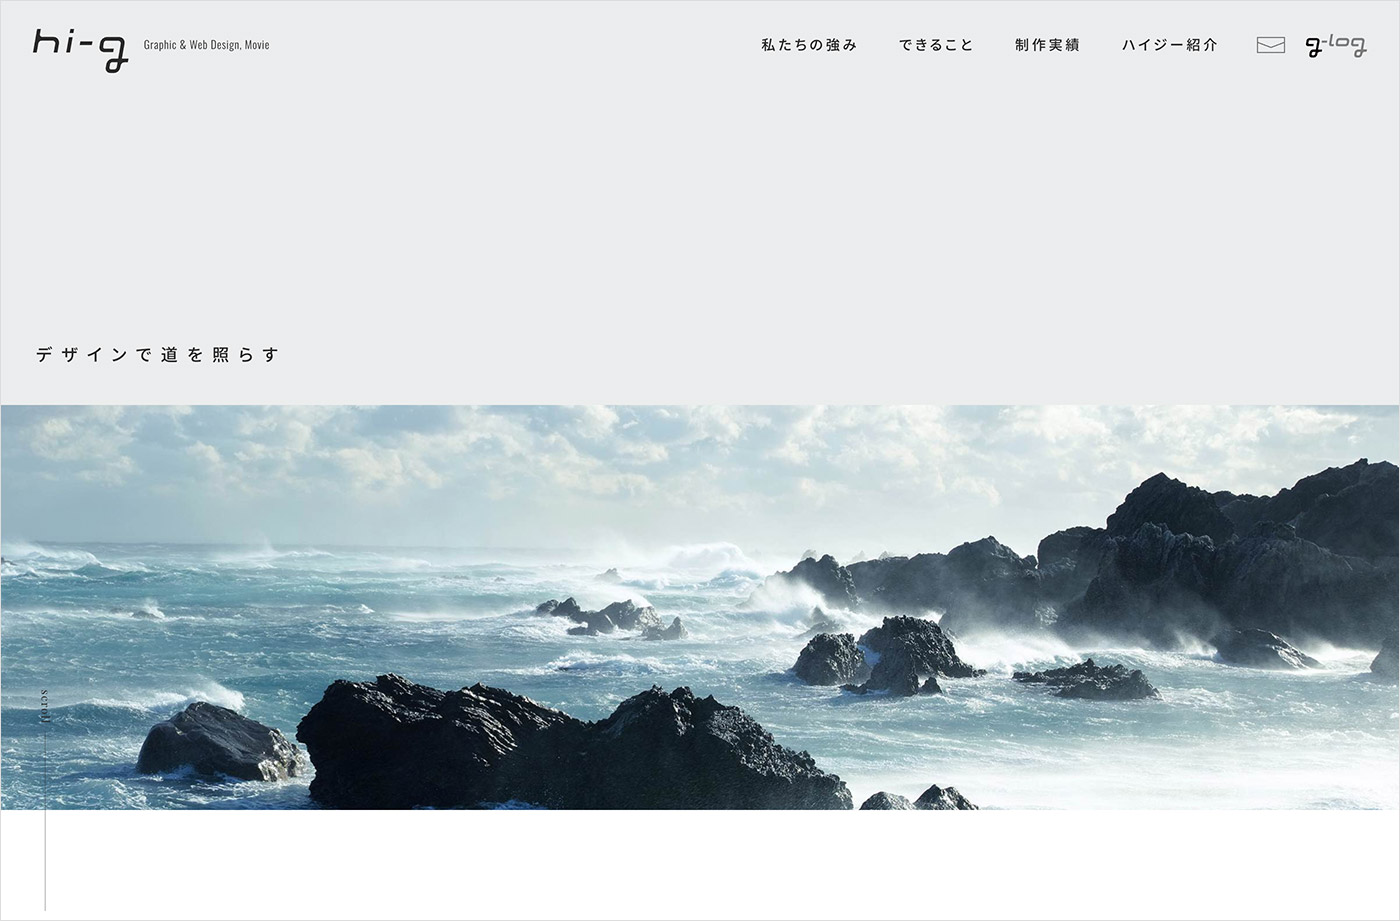 大阪のデザイン事務所『ハイジー』｜グラフィックデザイン｜WEB制作｜映像制作ウェブサイトの画面キャプチャ画像